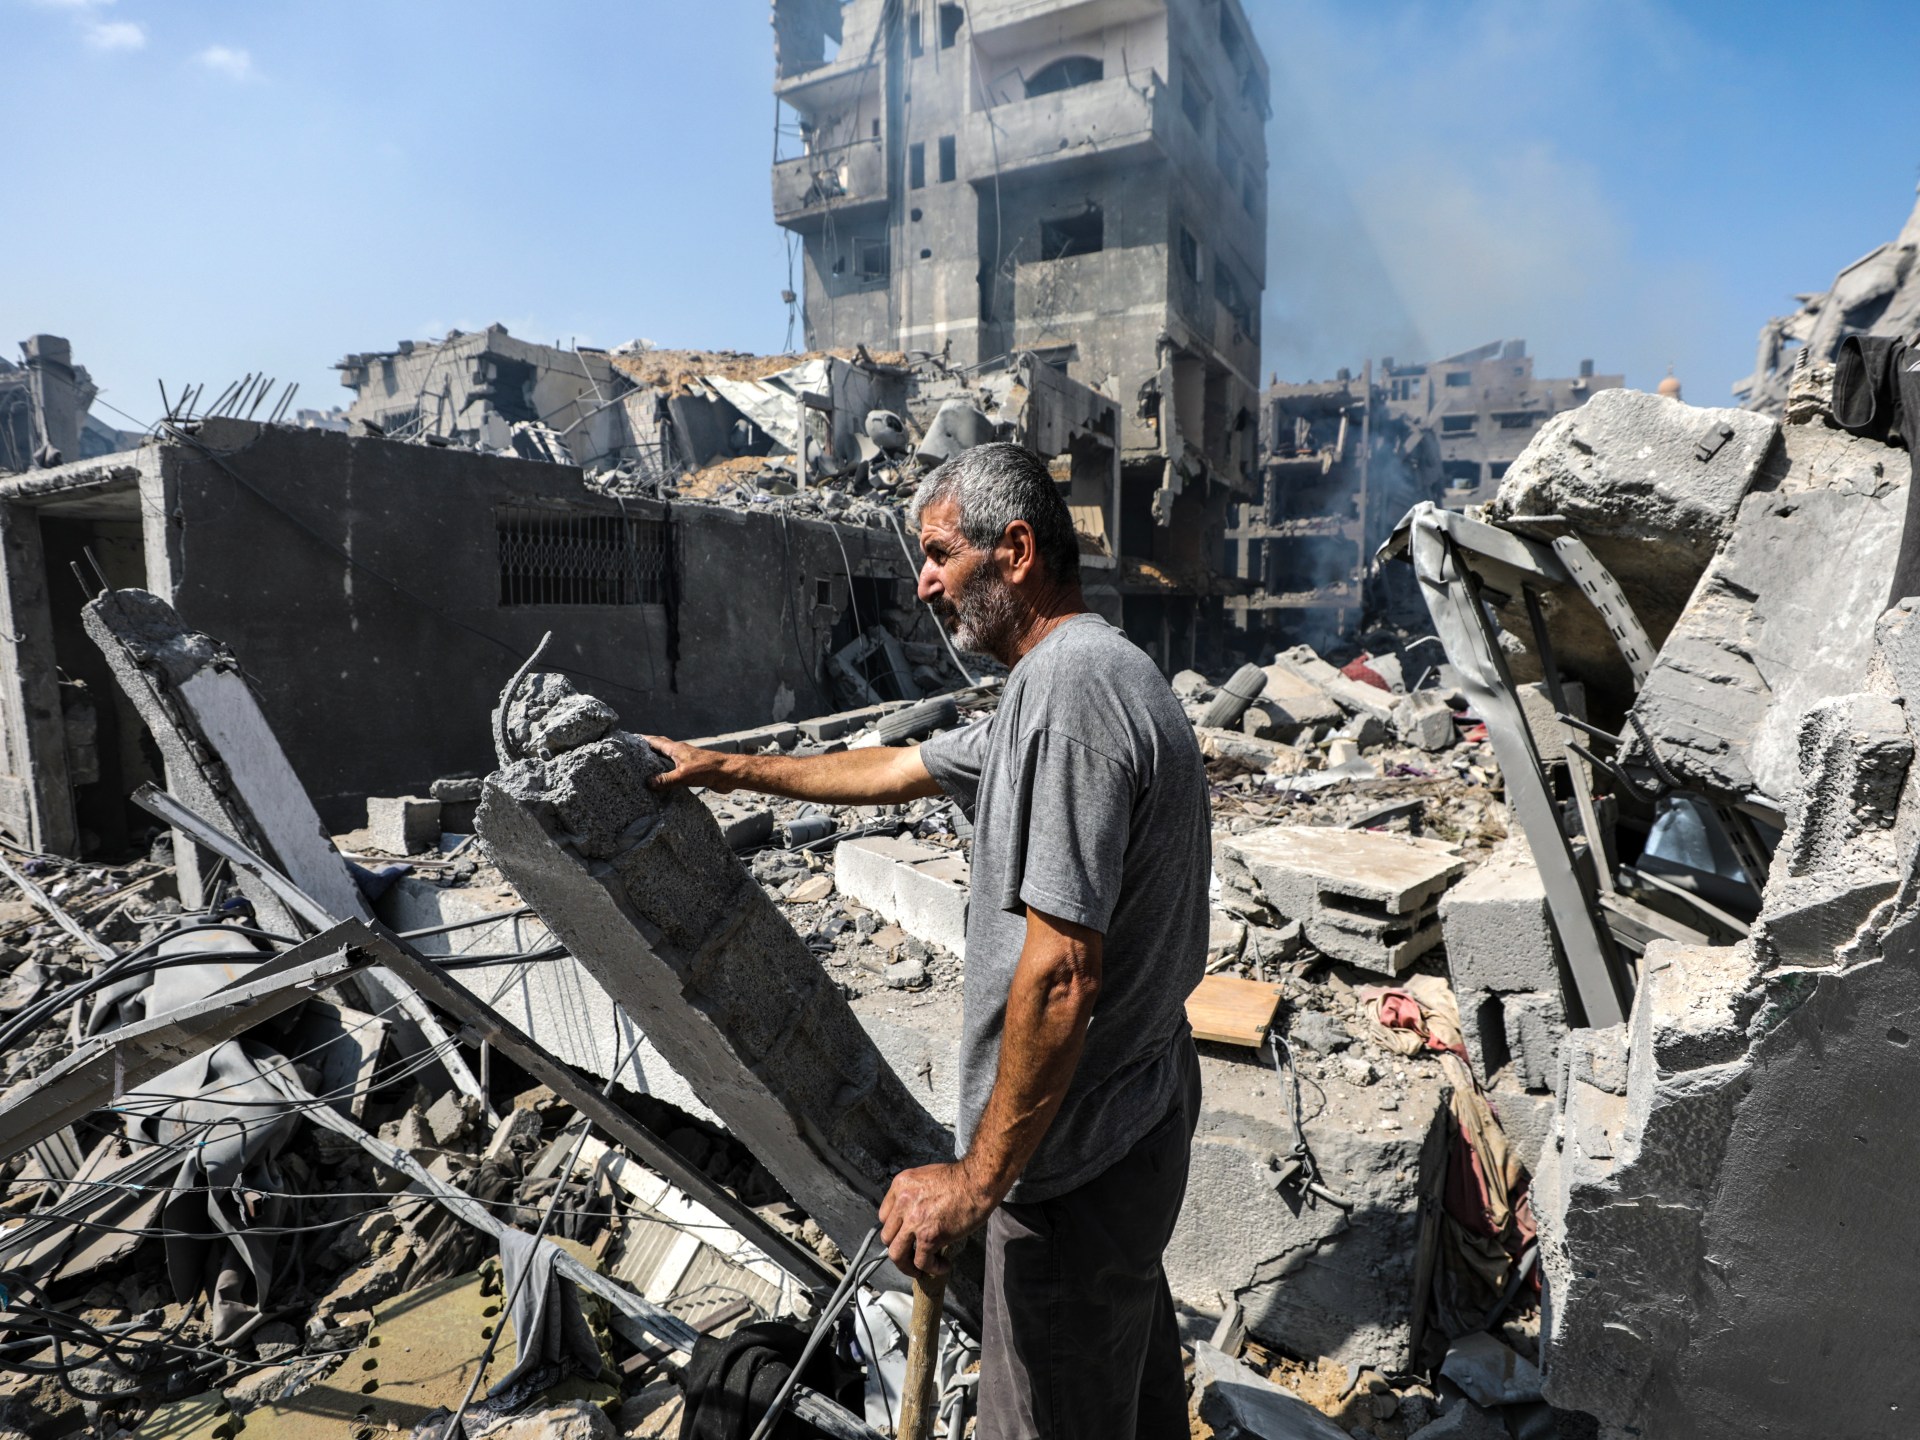 لاكروا: ما هي جريمة “قتل المنازل” التي تدين إسرائيل؟ | جولة الصحافة – البوكس نيوز